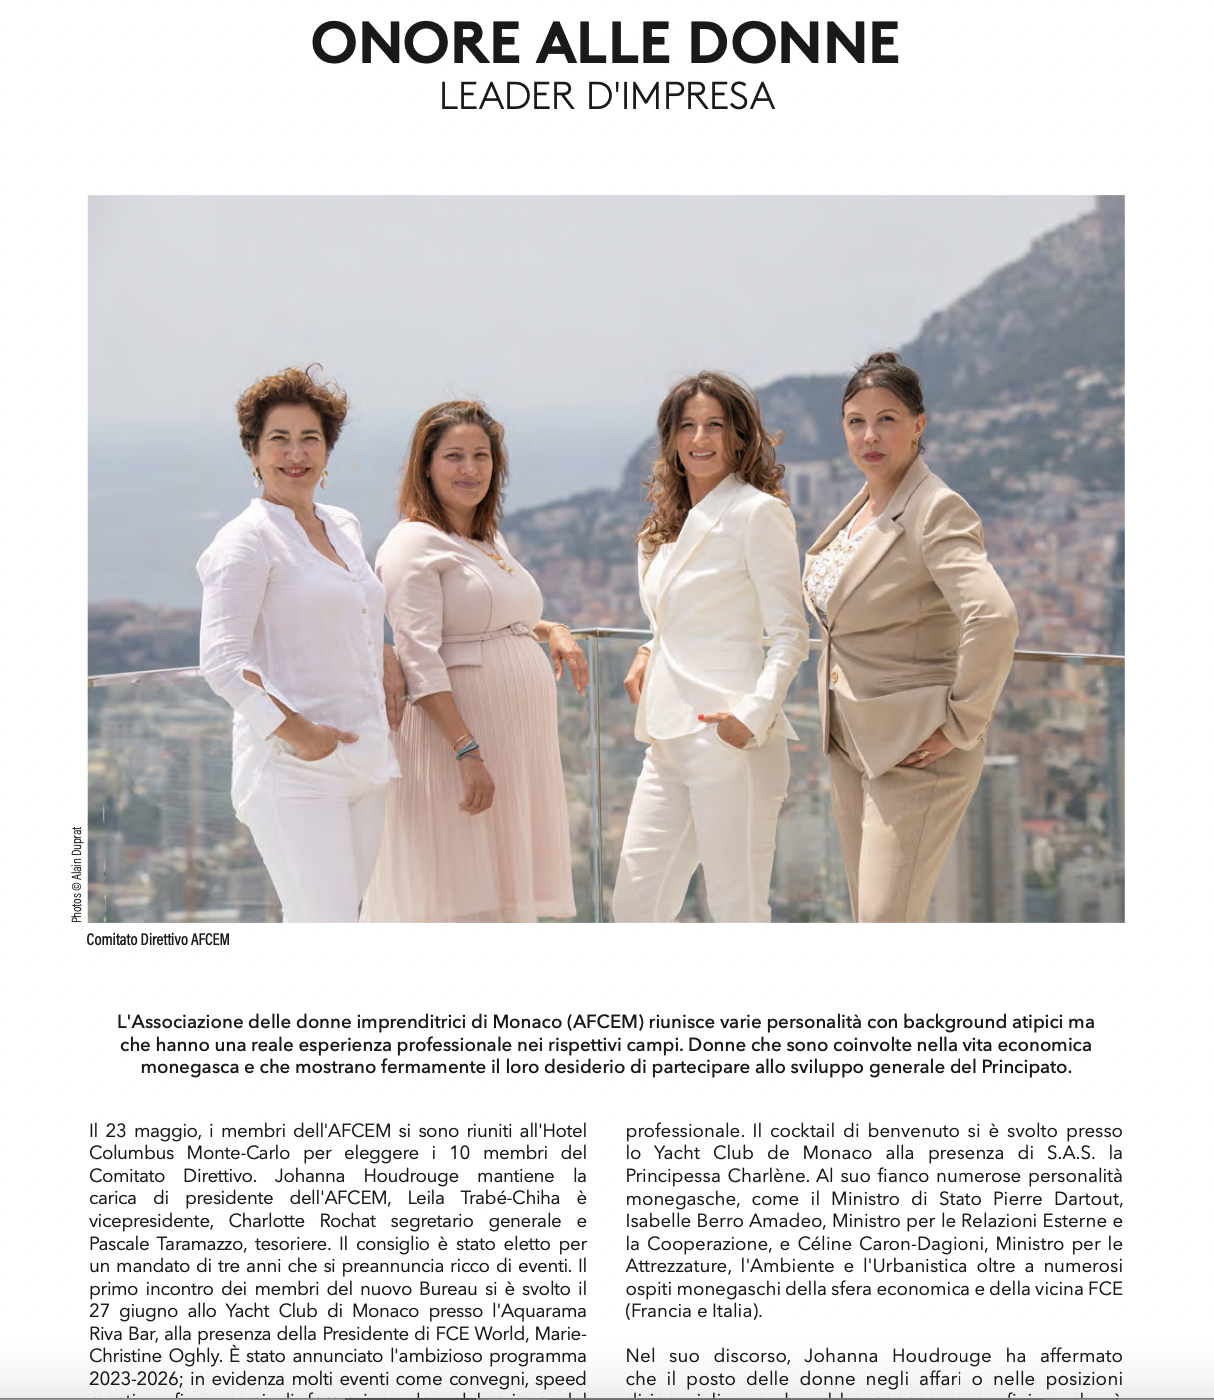 Article “Honneur aux femmes chefs d’entreprises” in Monaco Imprese